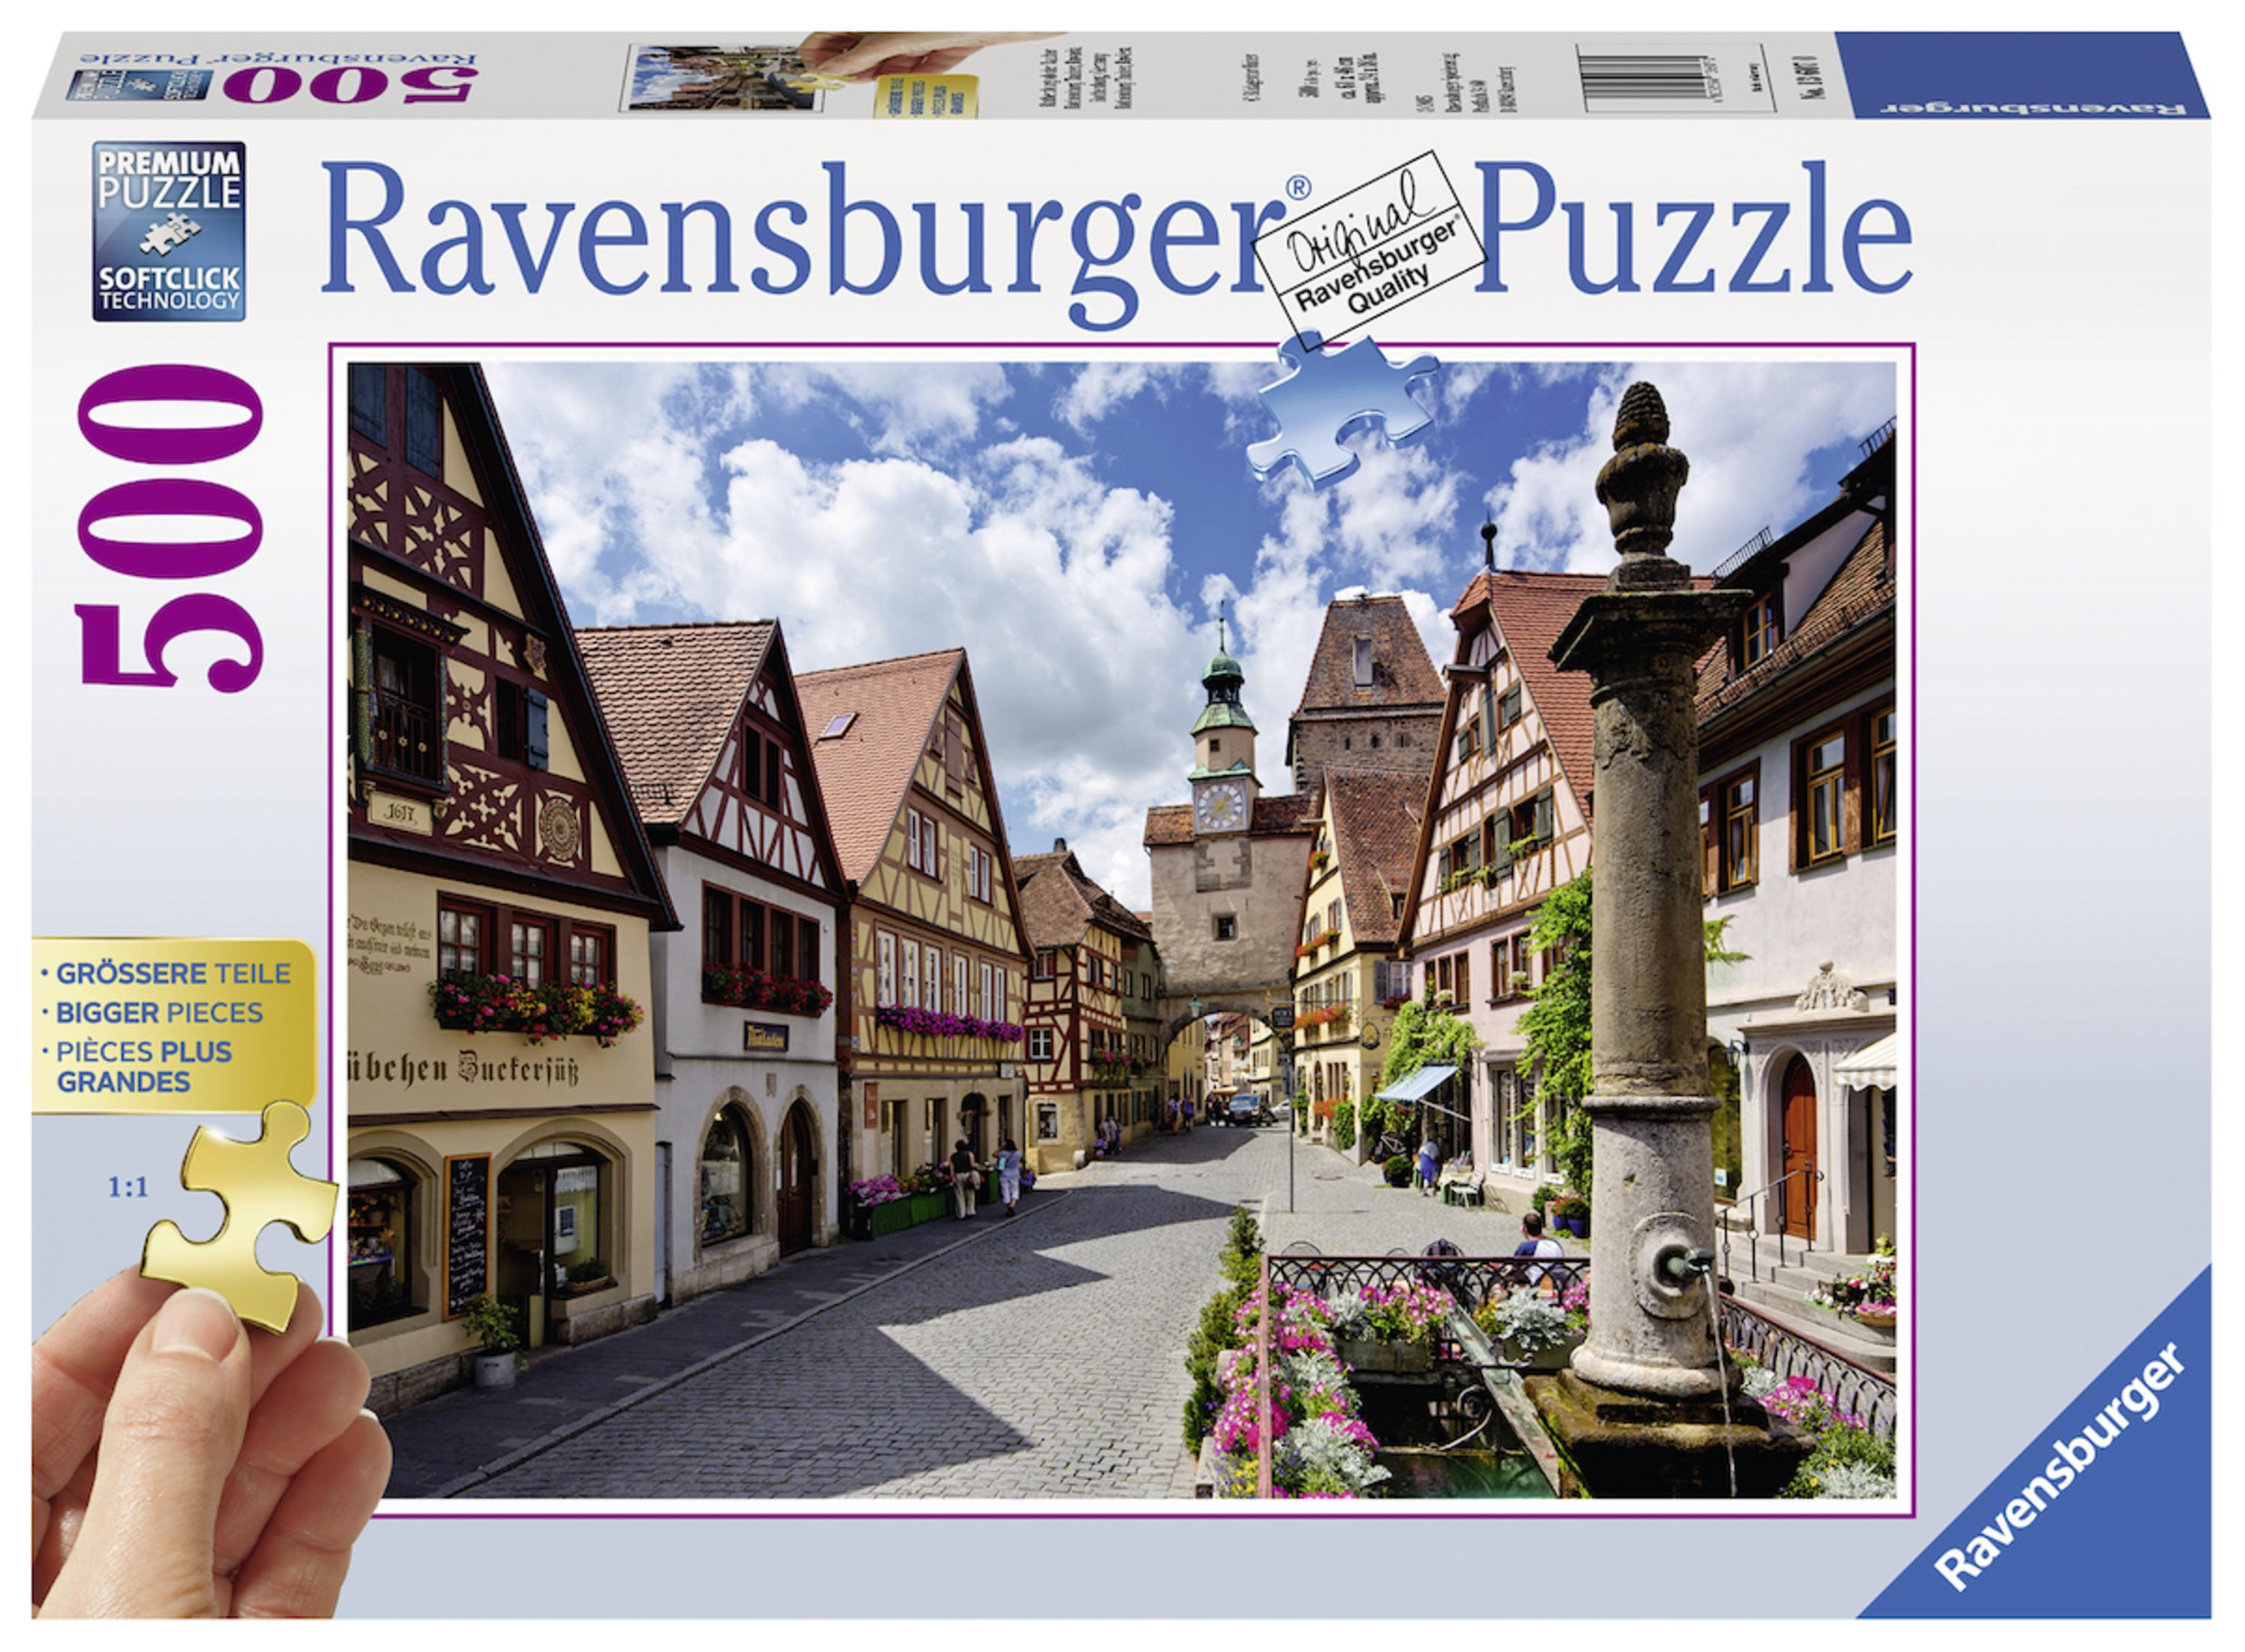 RAVENSBURGER OB TAUBER 13607 DER ROTHENBURG Puzzle